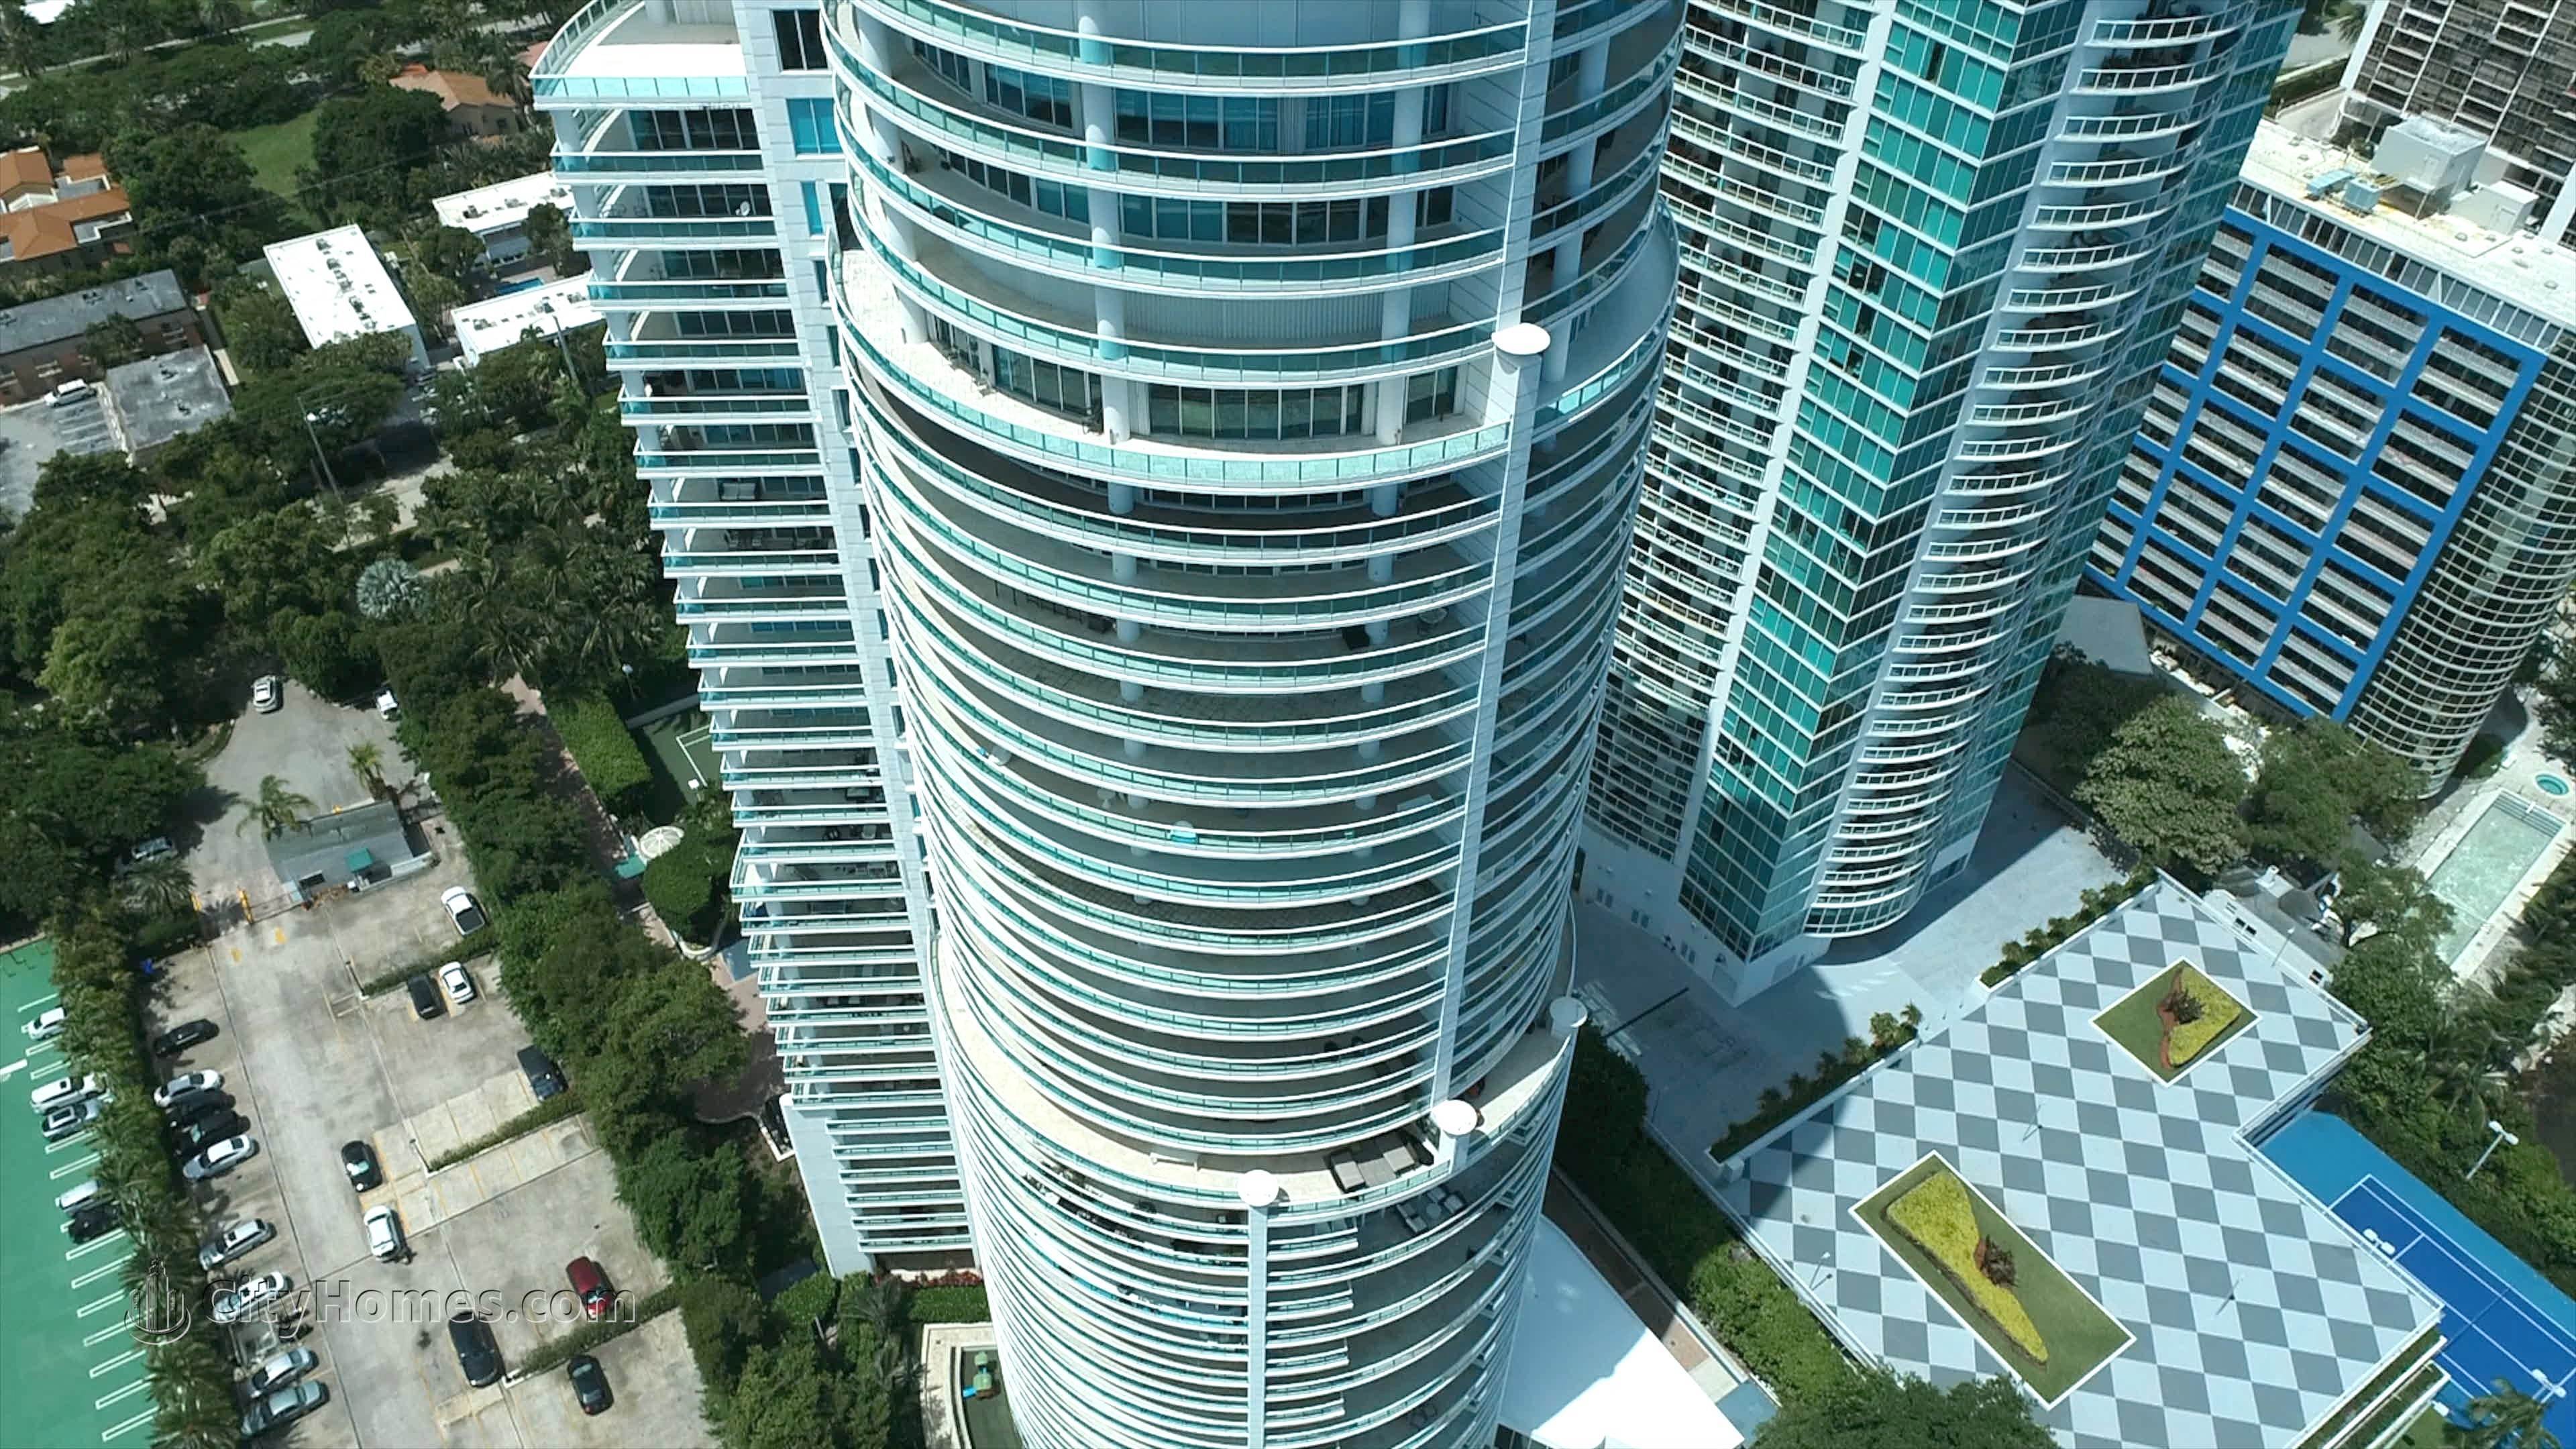 5. Bristol Tower Brickell building at 2127 Brickell Avenue, Brickell, Miami, FL 33129